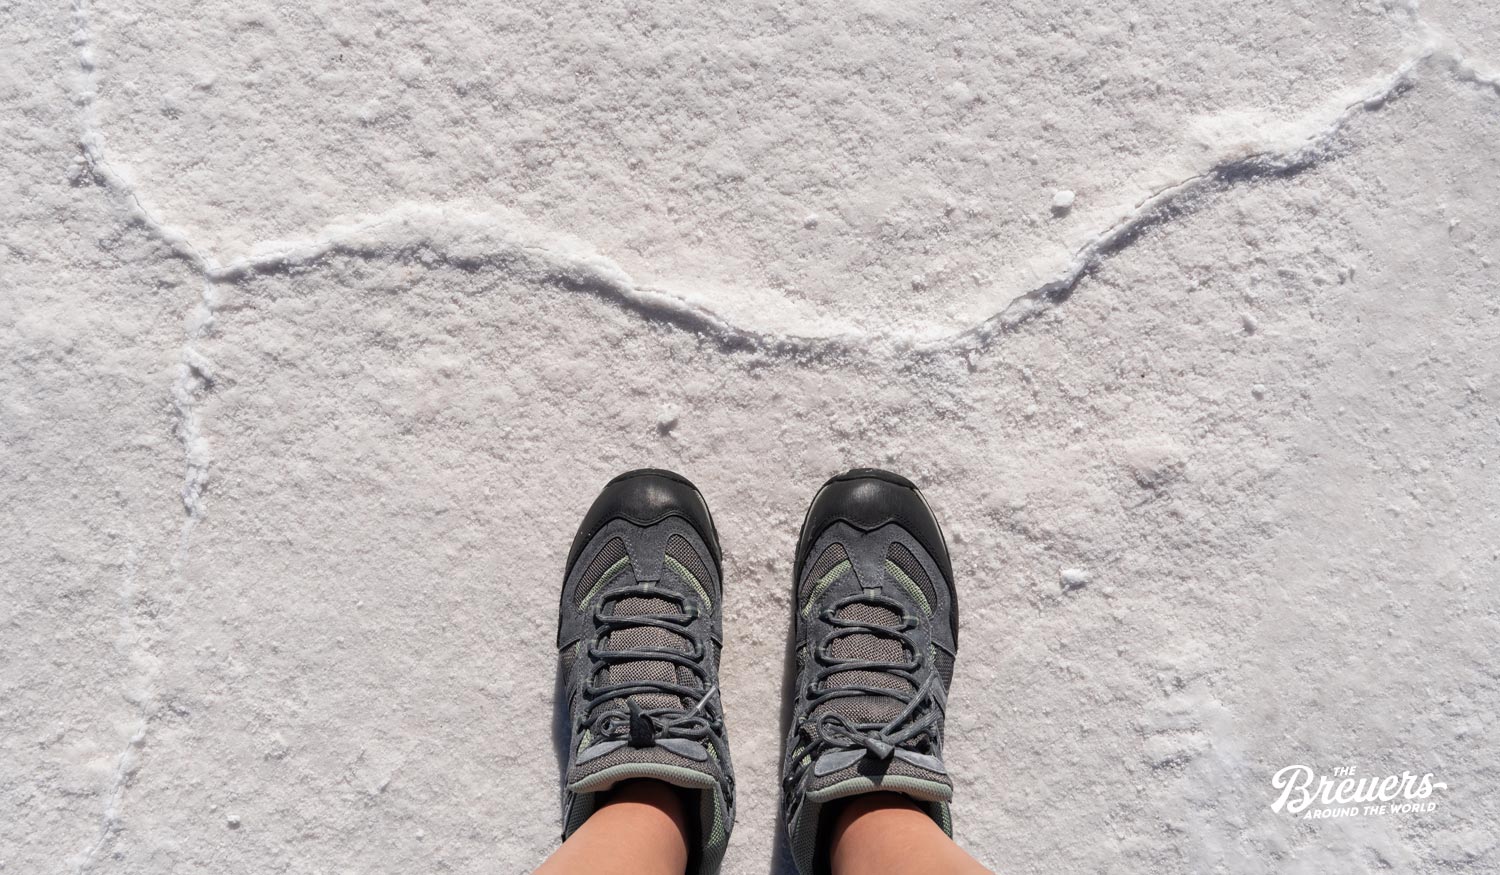 Schuhe auf der Salzkruste in der Bonneville Salt Flats